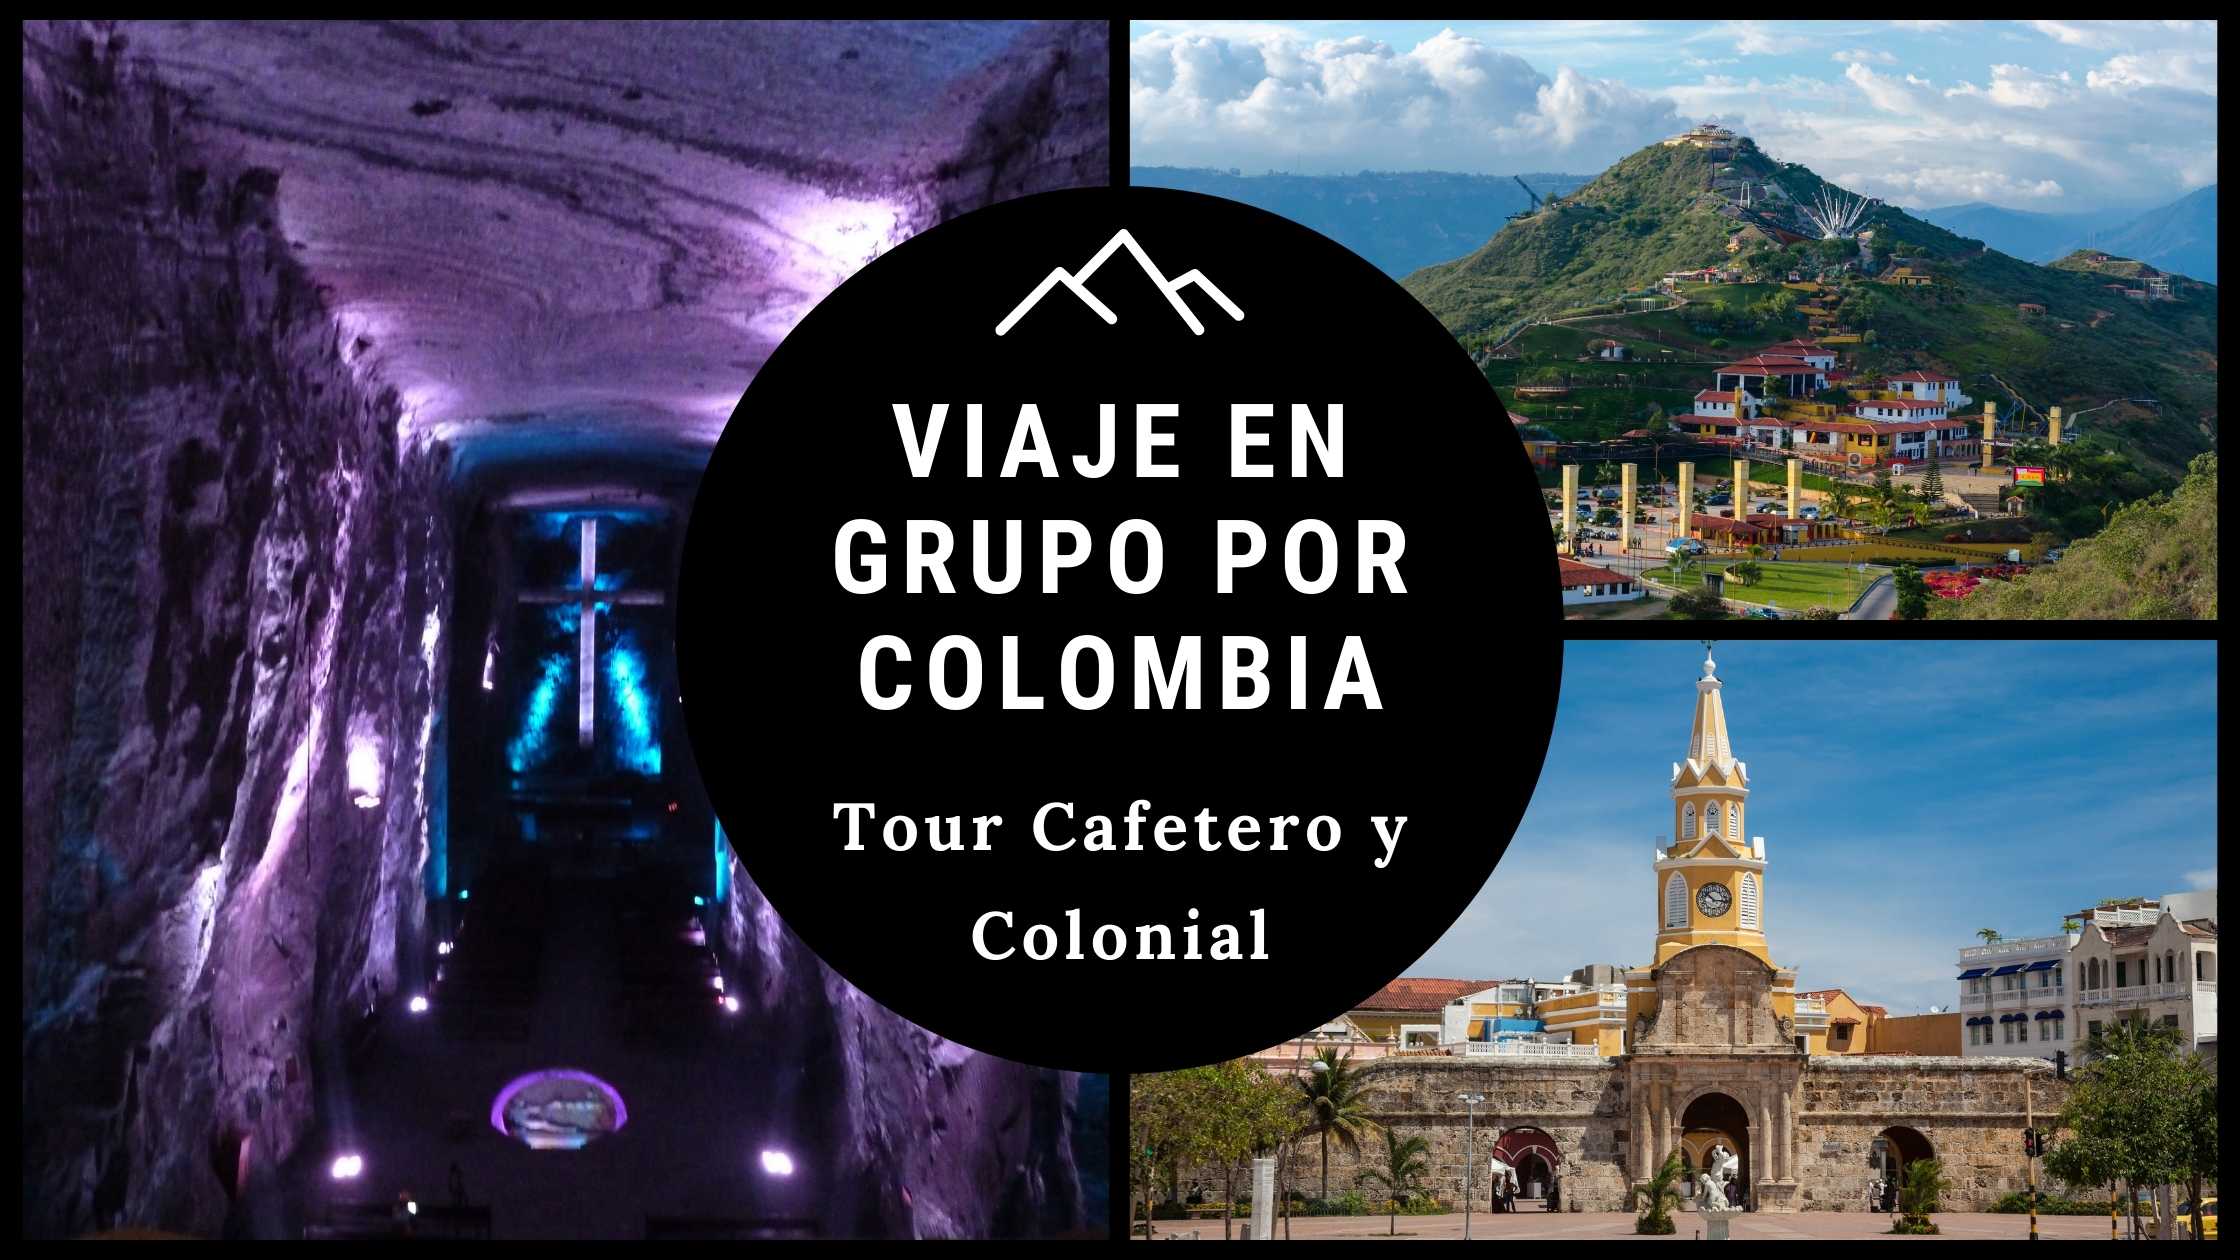 Viaje en Grupo por Colombia- Tour cafetero y colonial